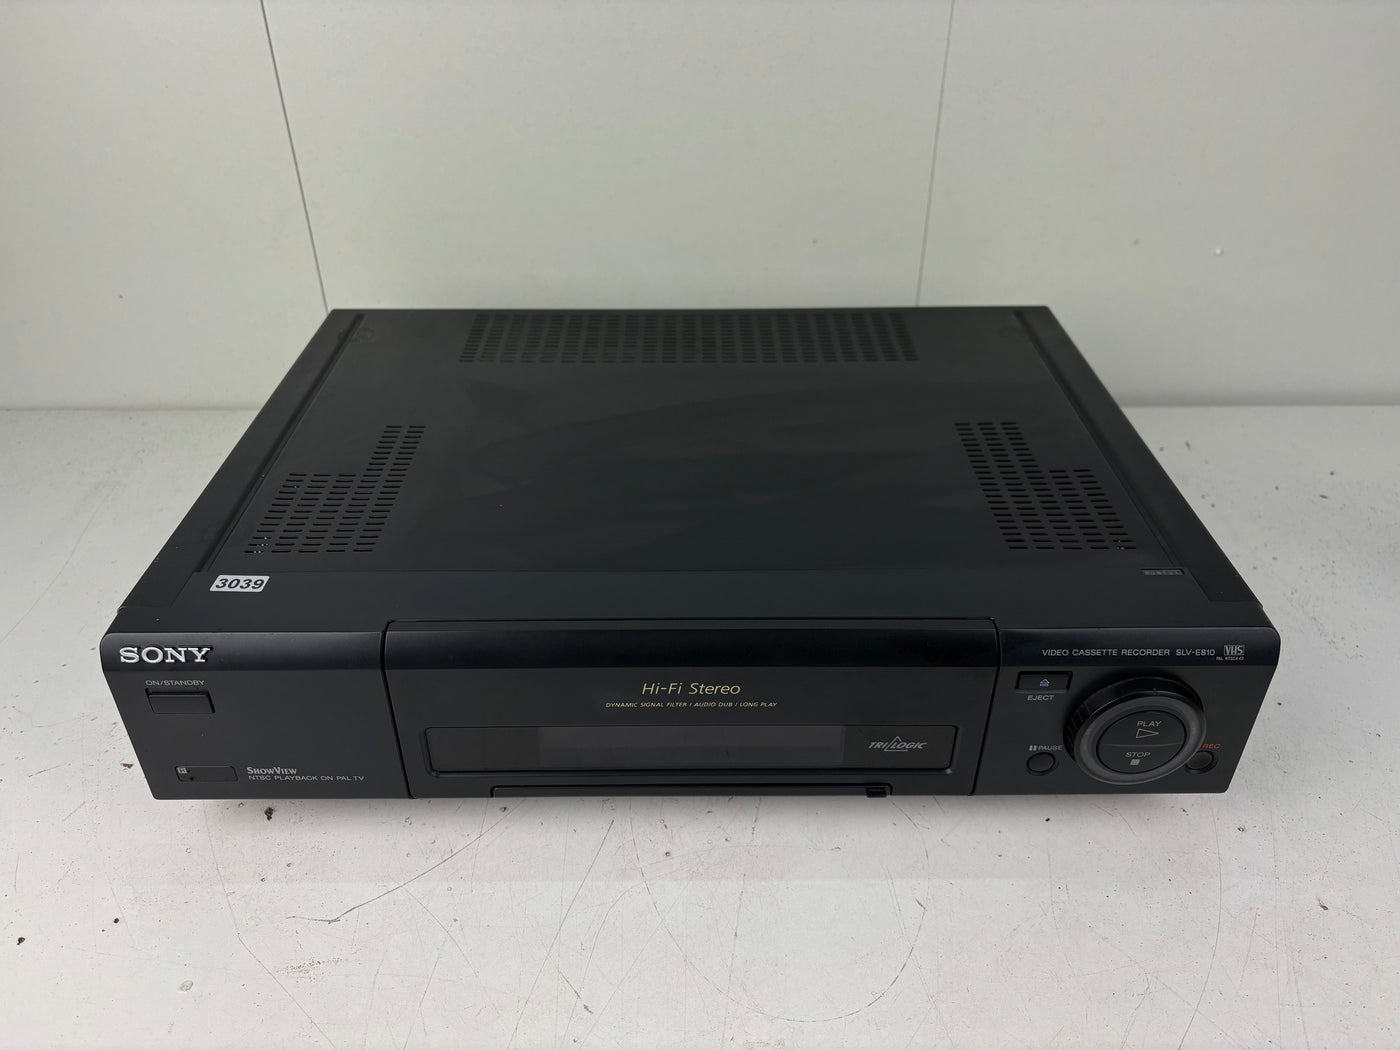 Sony SLV-E810 - VHS Videorecorder